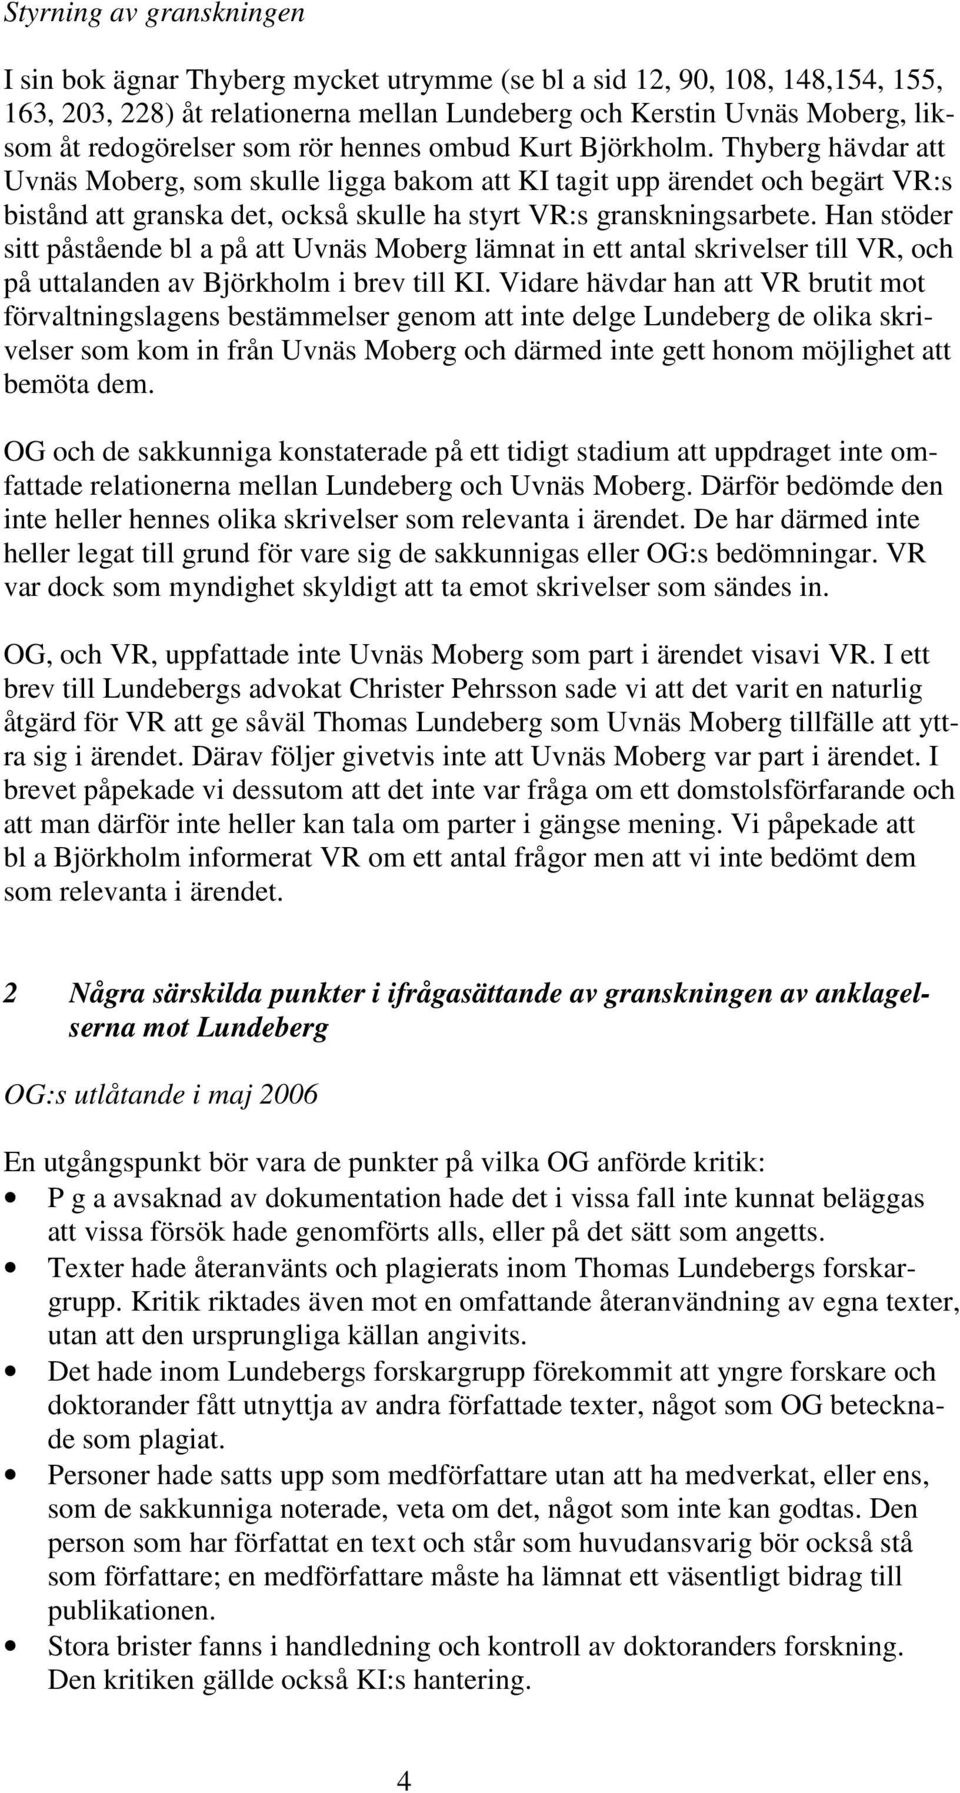 Thyberg hävdar att Uvnäs Moberg, som skulle ligga bakom att KI tagit upp ärendet och begärt VR:s bistånd att granska det, också skulle ha styrt VR:s granskningsarbete.